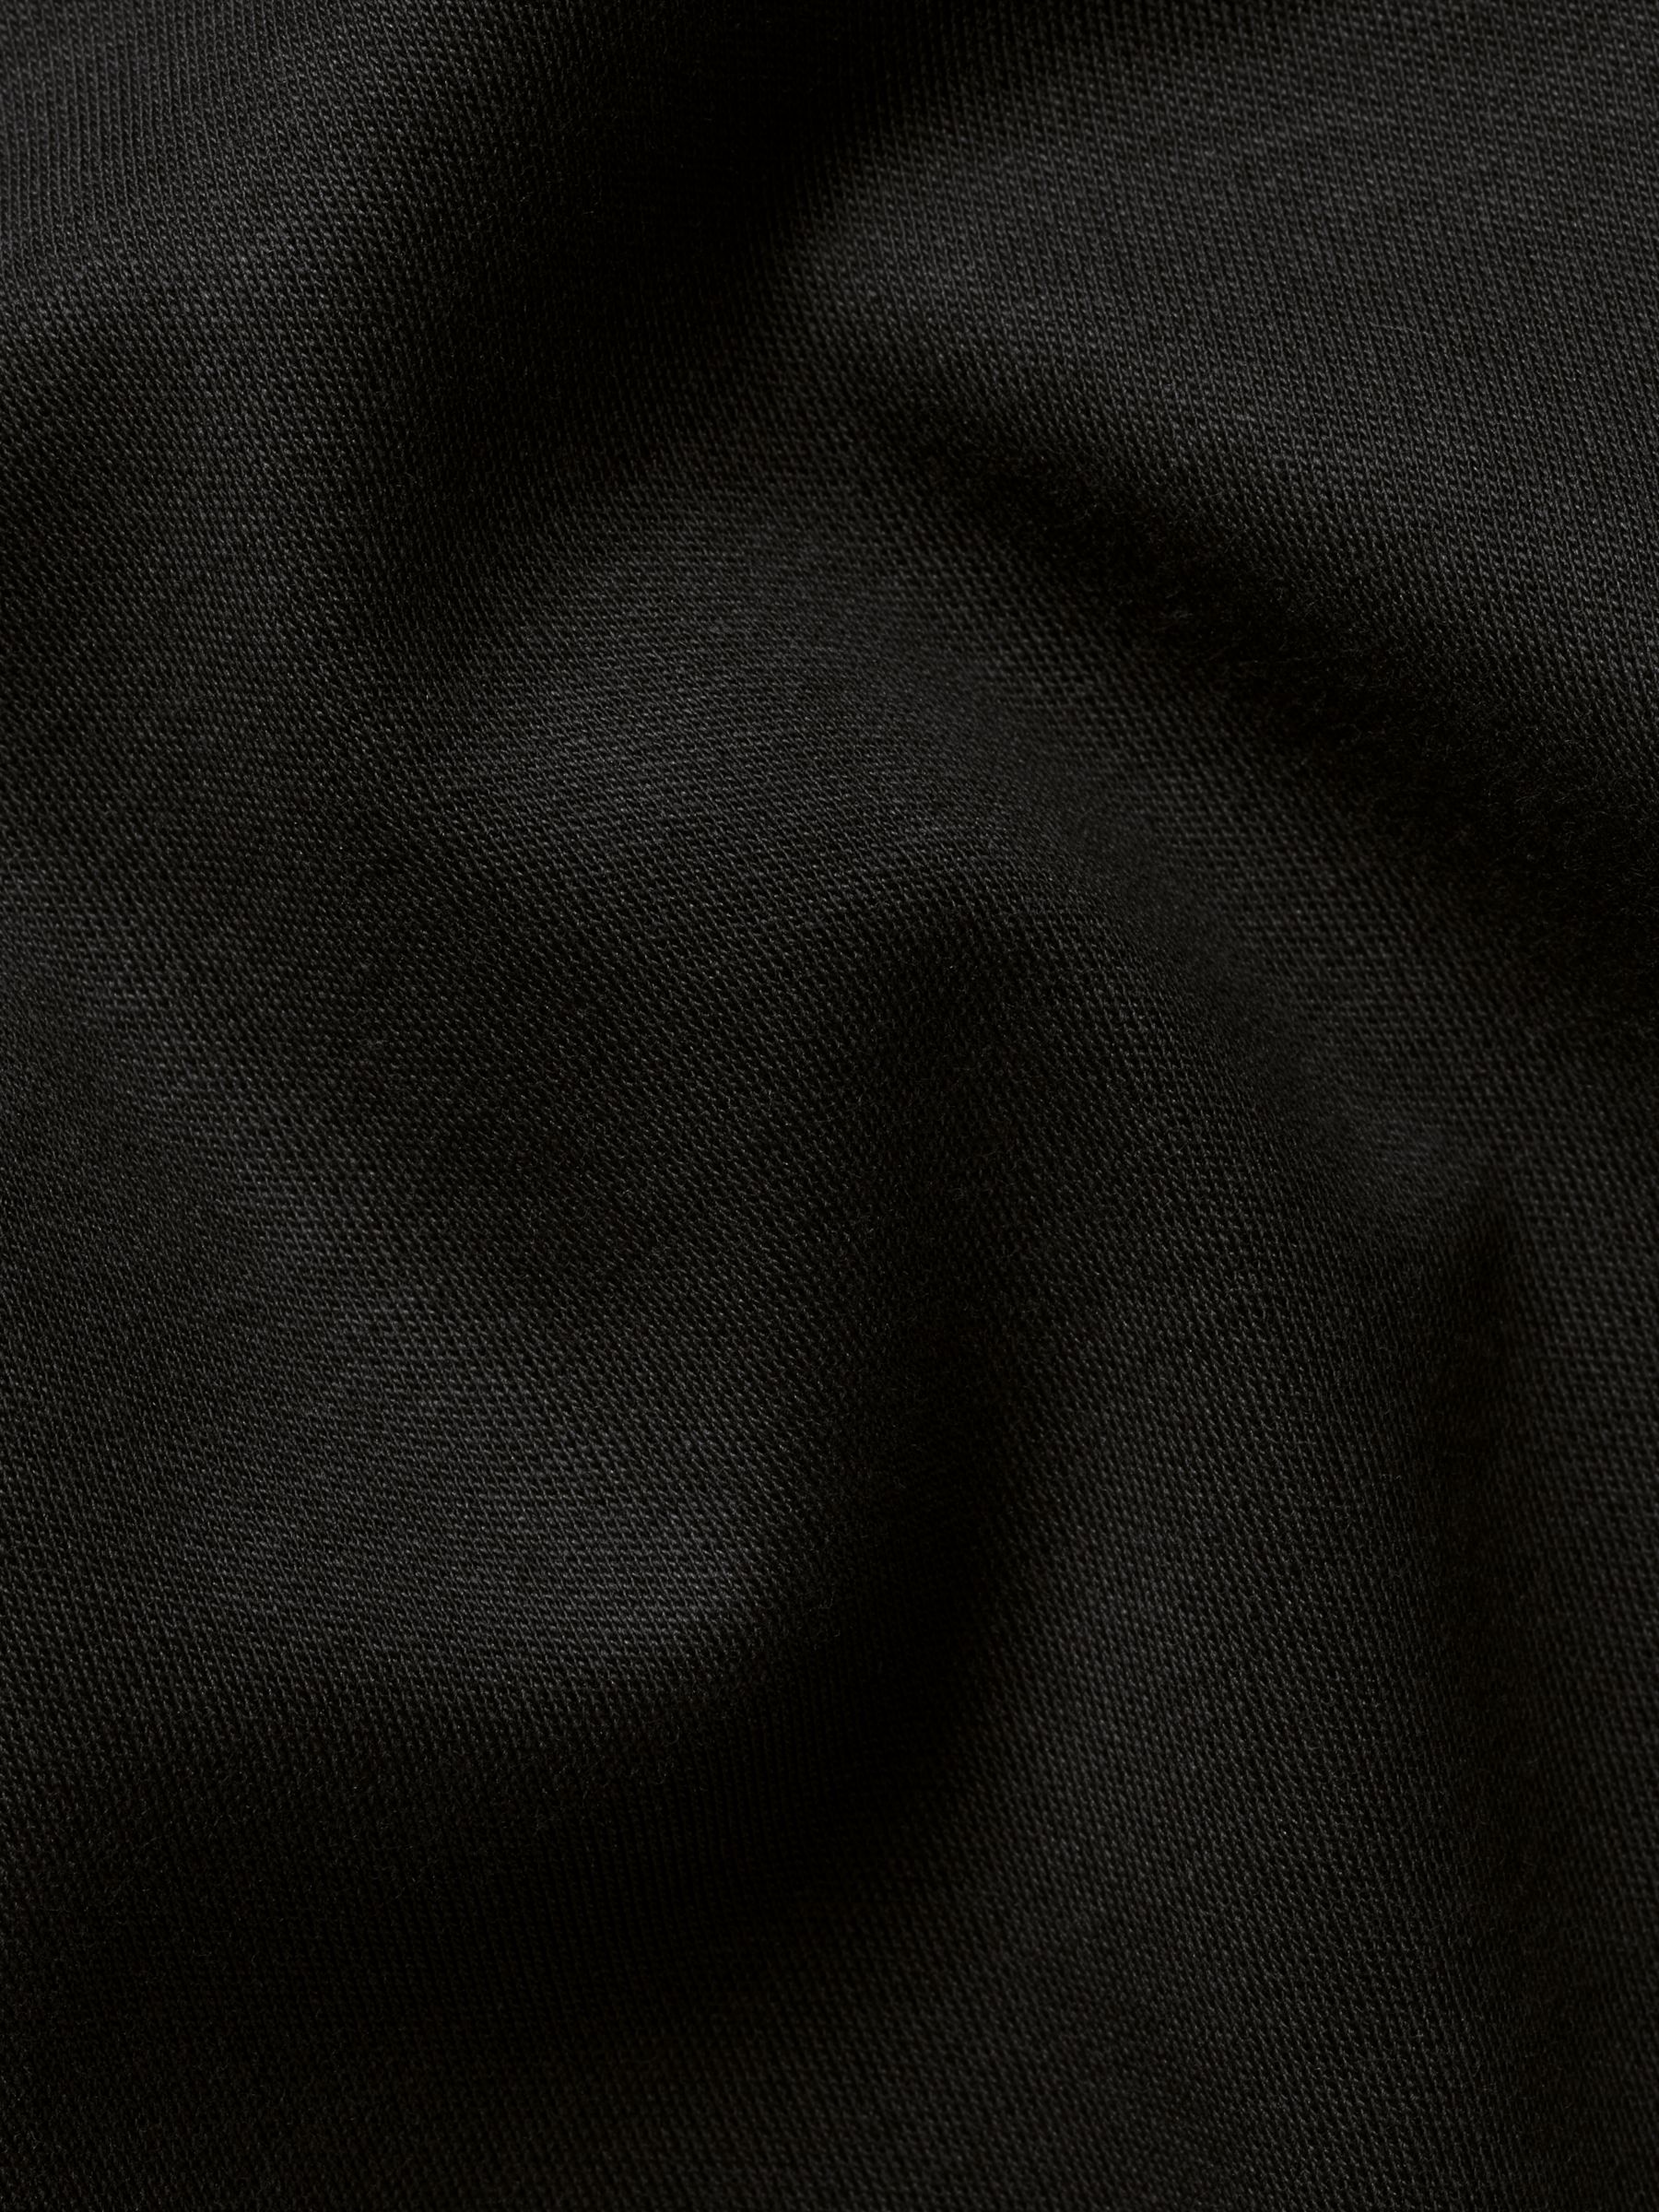 Charles Tyrwhitt Smart Jersey Short Sleeve Polo, Black, S